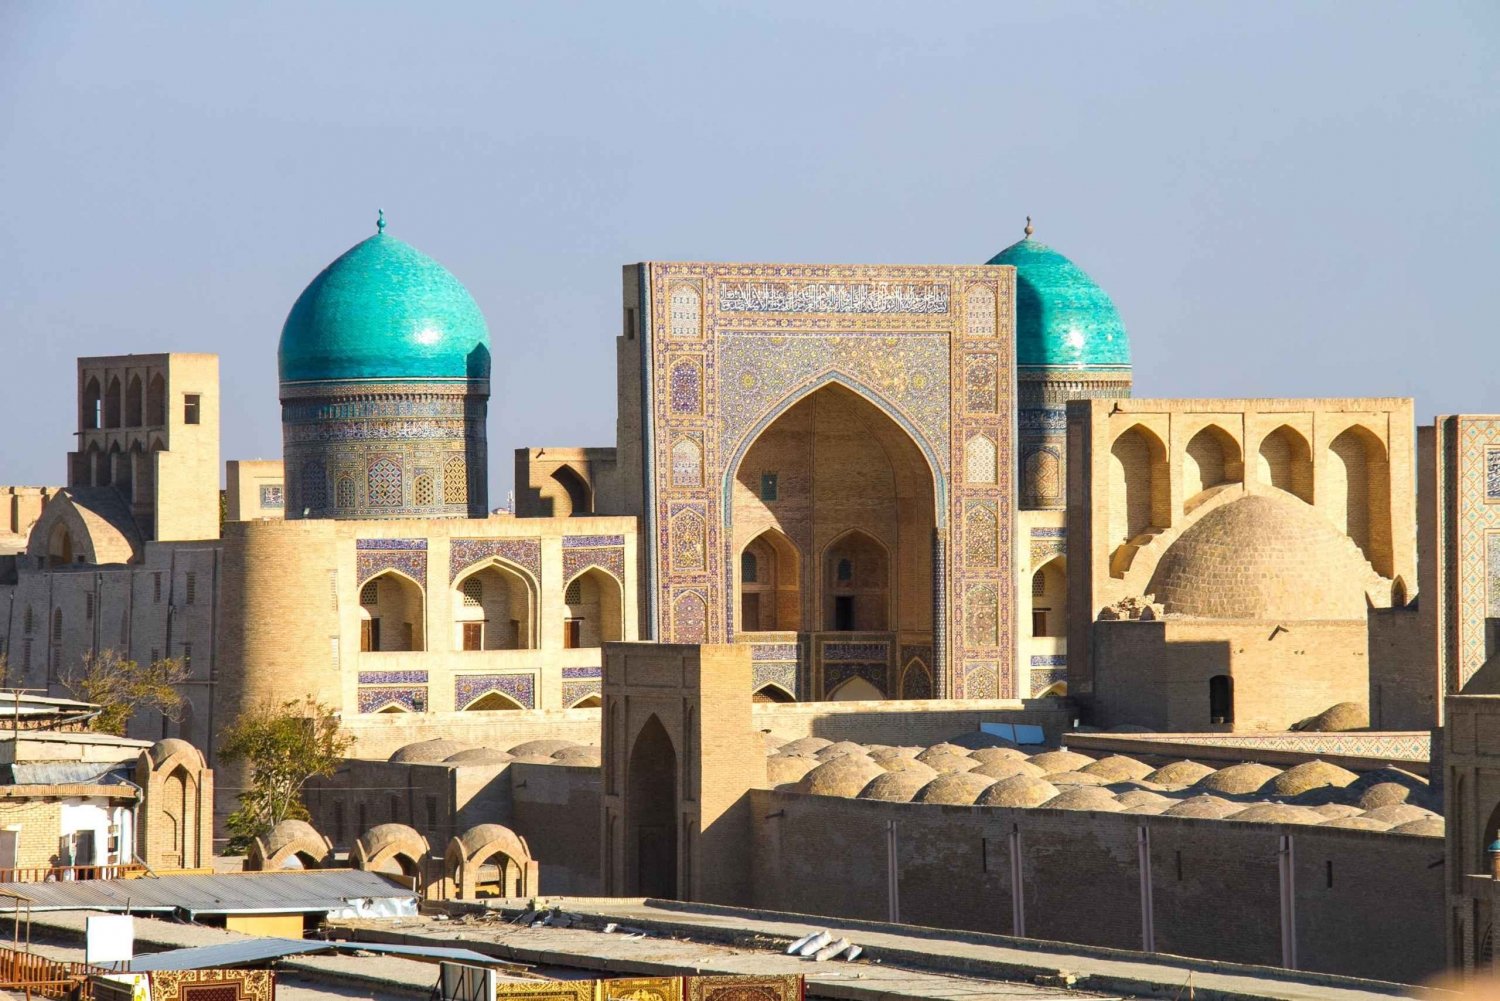 10-dniowa wycieczka kulturalna do Uzbekistanu